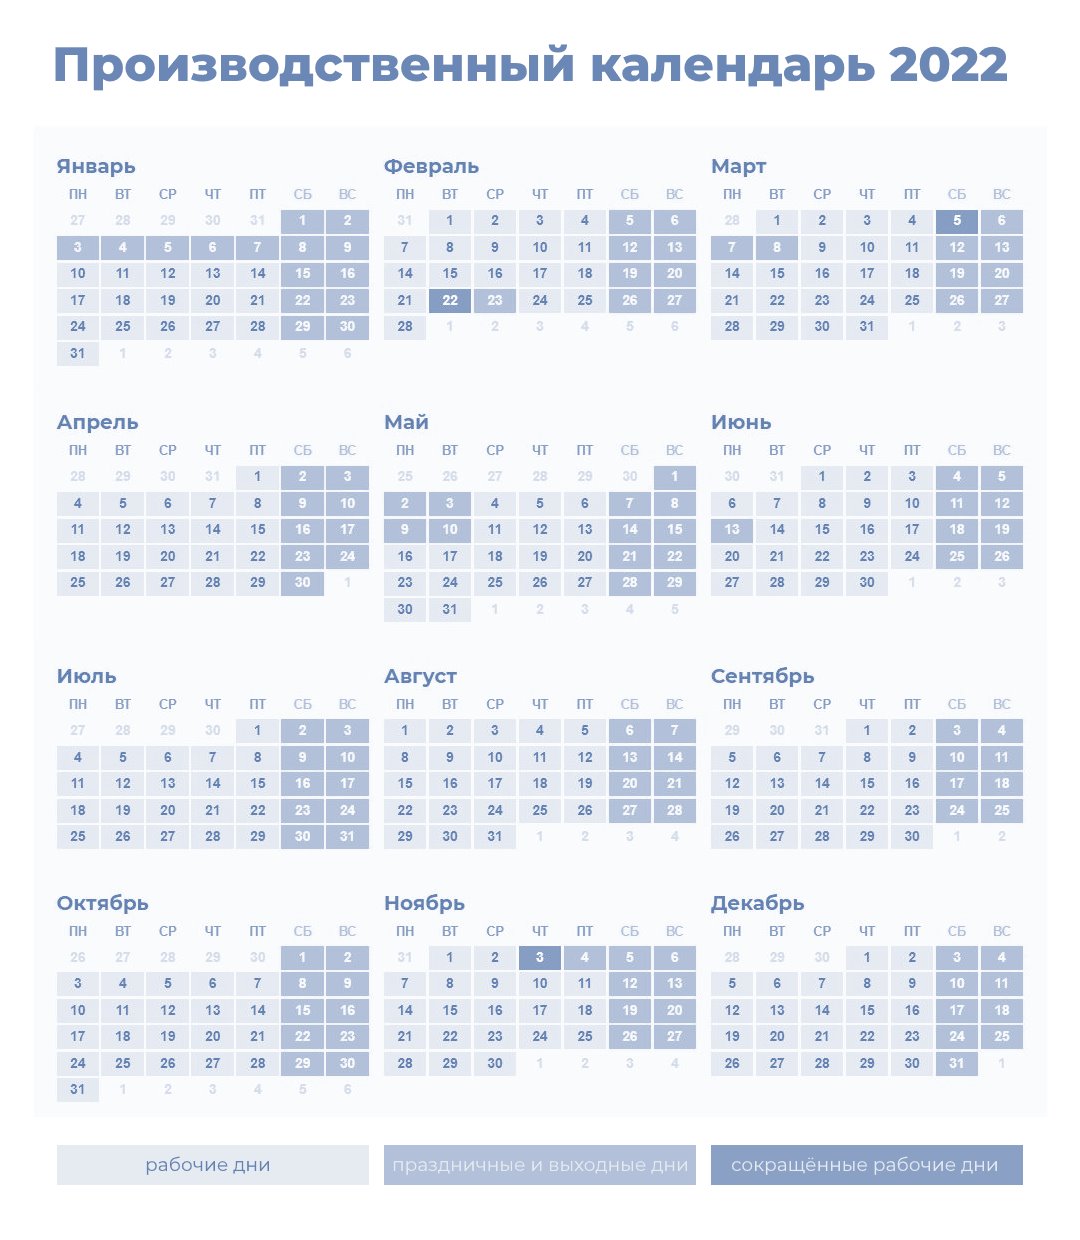 Производственный календарь на 2022 год для пятидневной рабочей недели